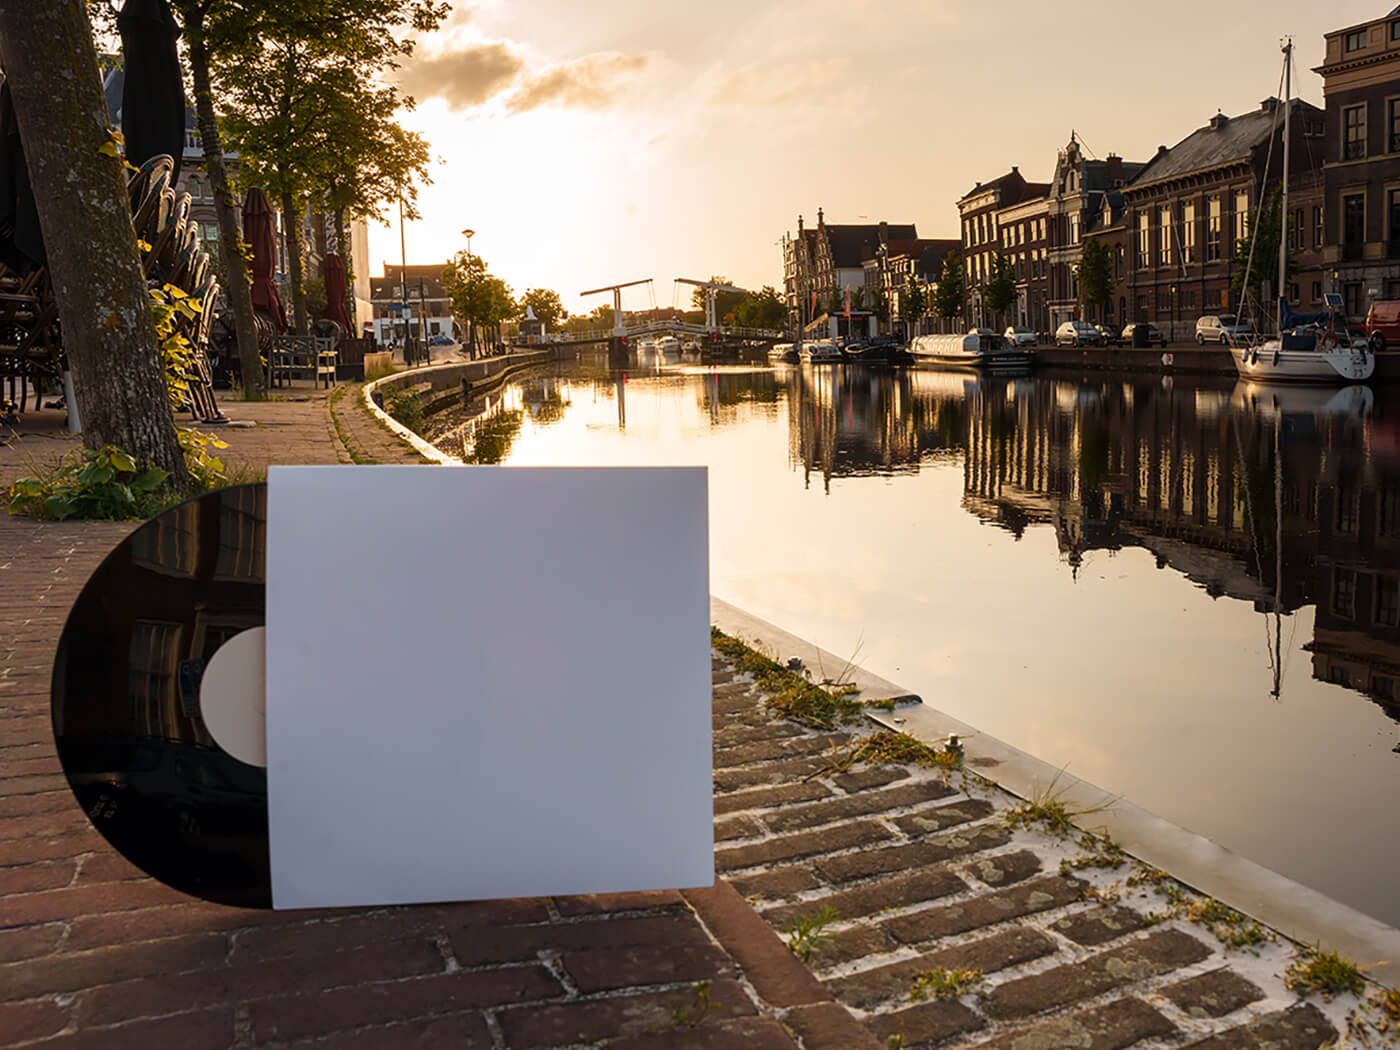 Vinyl shot against backdrop in the Netherlands